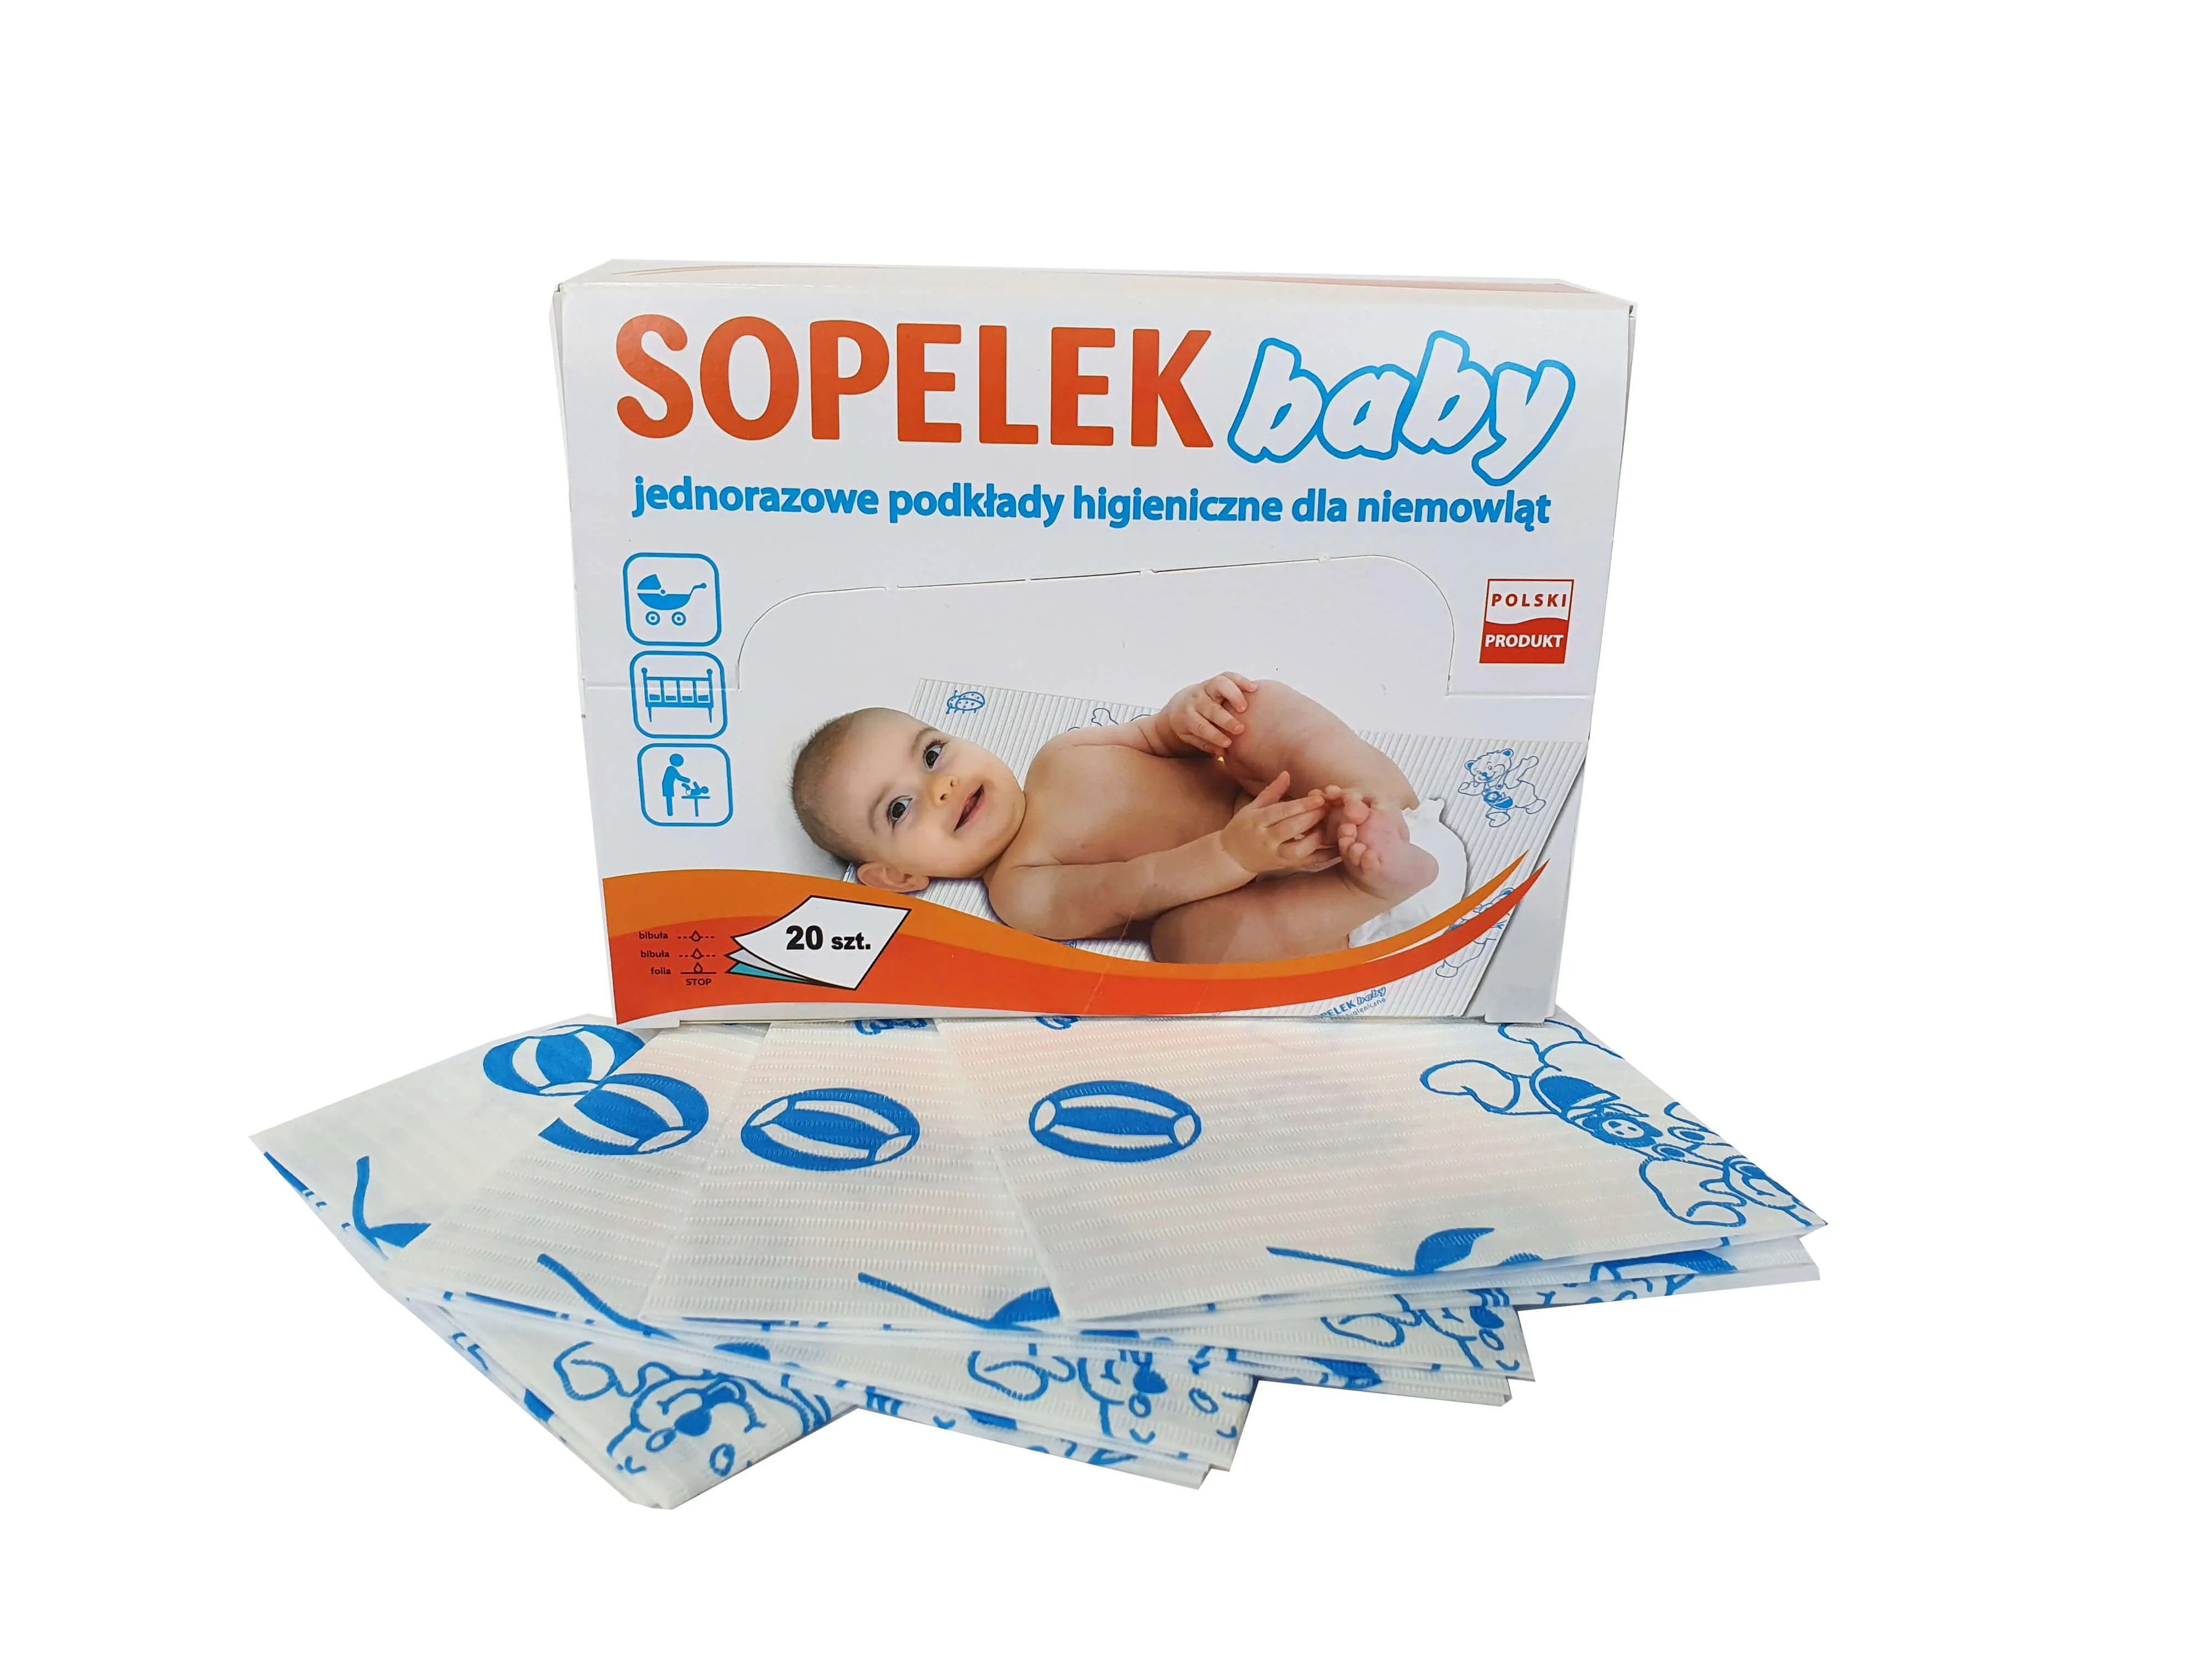 Sopelek Baby, jednorazowe podkłady higieniczne dla niemowląt, 20 sztuk